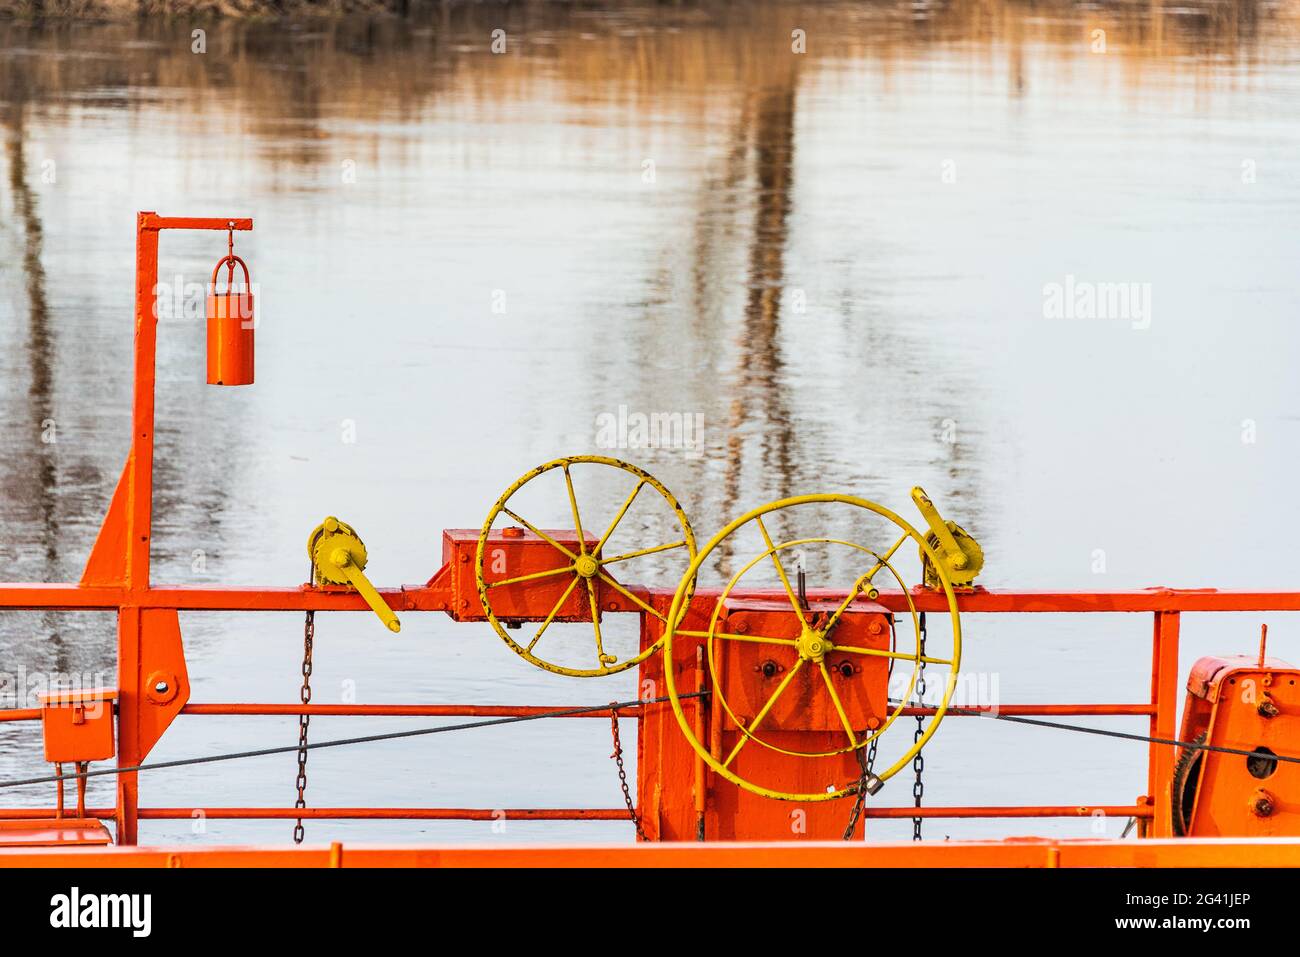 Die Details der Seilfähre, die über einen Fluss durch Kabel verbunden mit beiden Ufer. Die orange Kettenfähre, gelbes Lenkrad und blaues Wasser Stockfoto